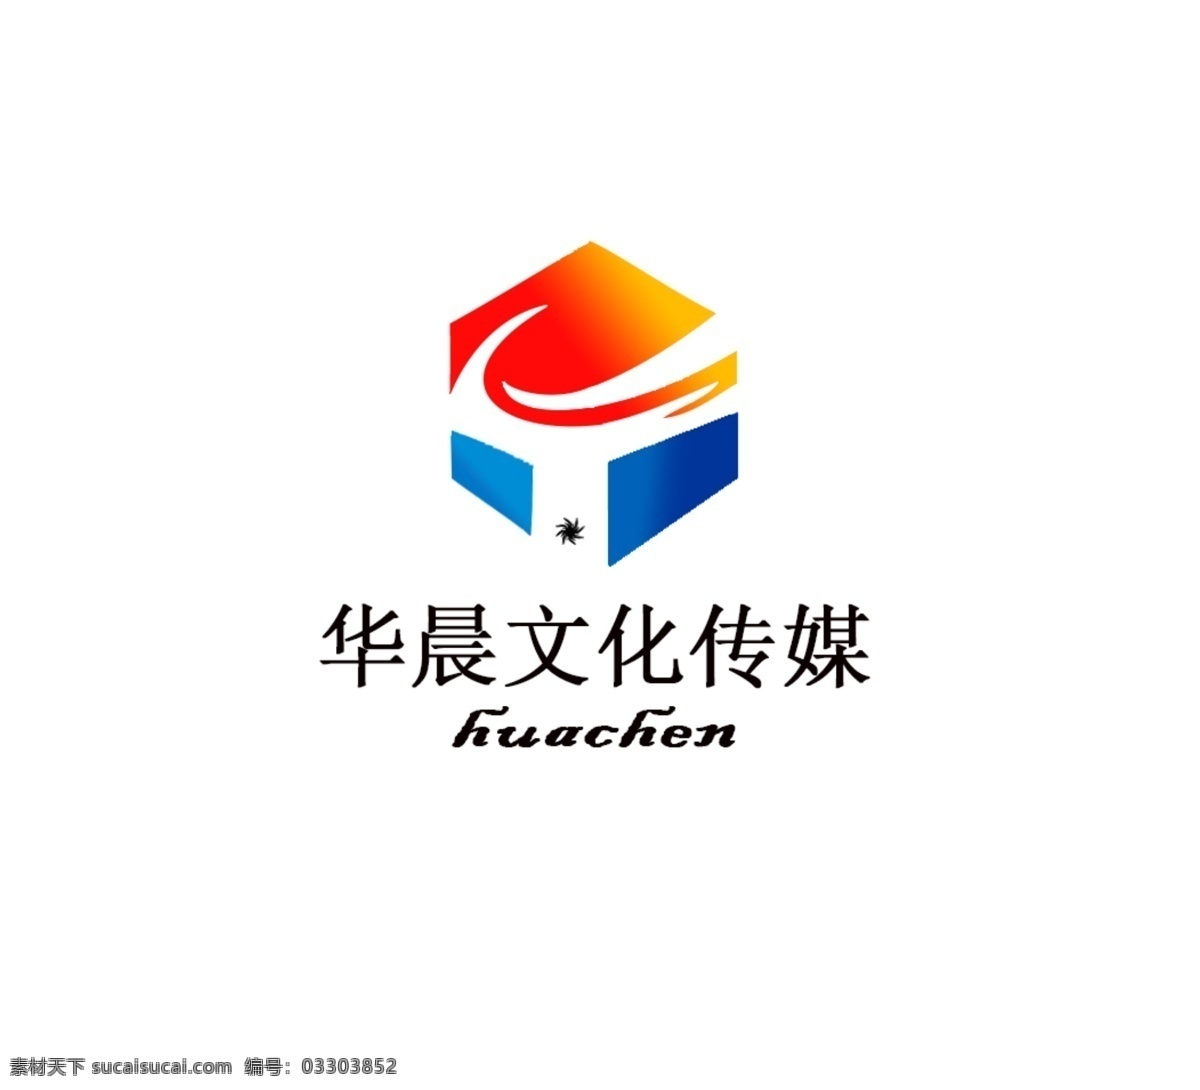 华晨 文化 传媒 logo 图标 logo设计 logo图标 白色